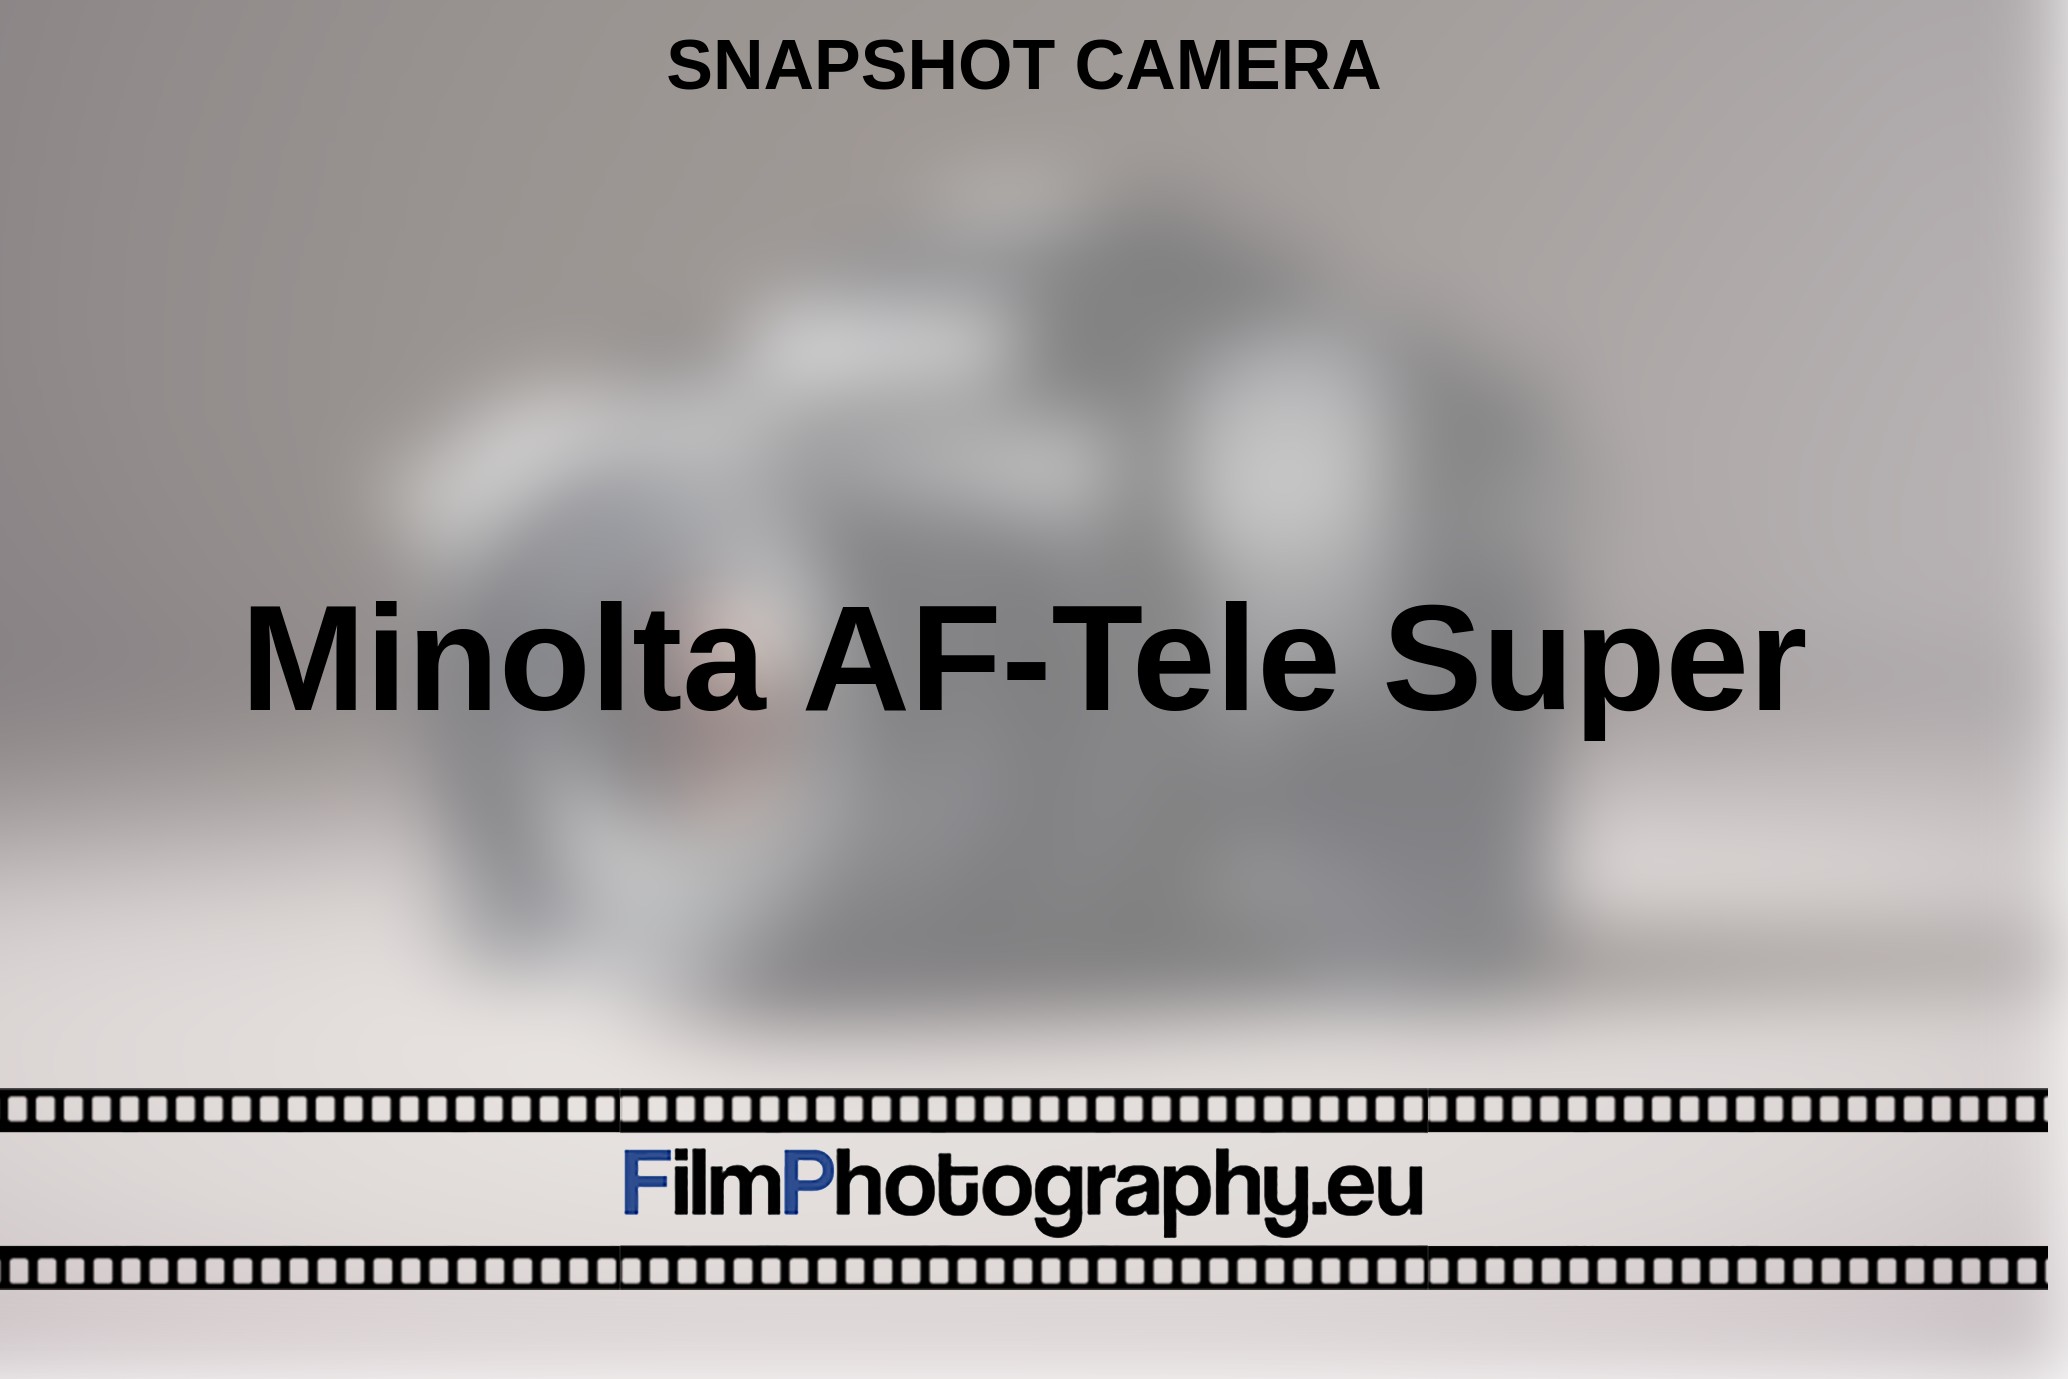 Minolta-AF-Tele-Super-snapshot-camera-bnv.jpg